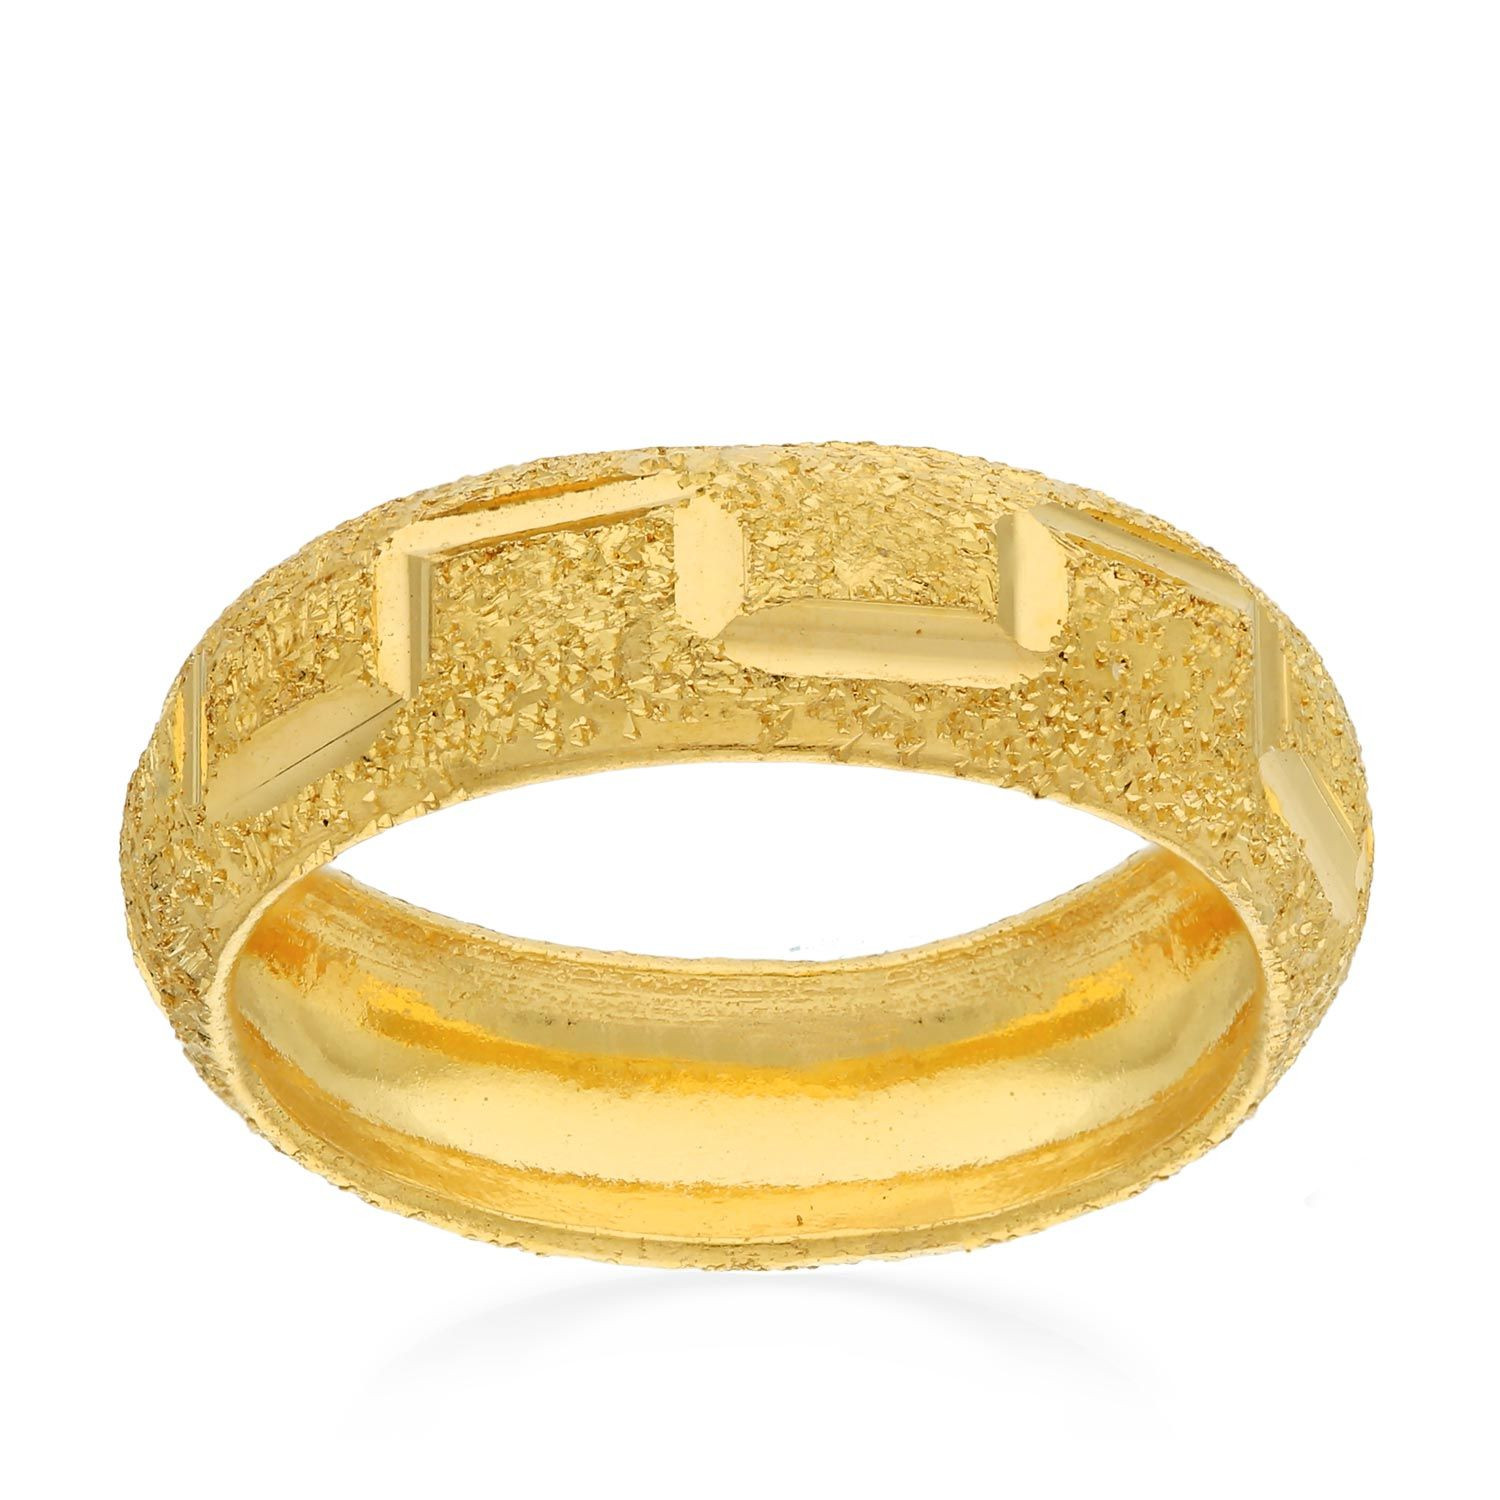 Buy Starlet Gold Ring RGNOBAN030 for Kids Online | Malabar Gold & Diamonds